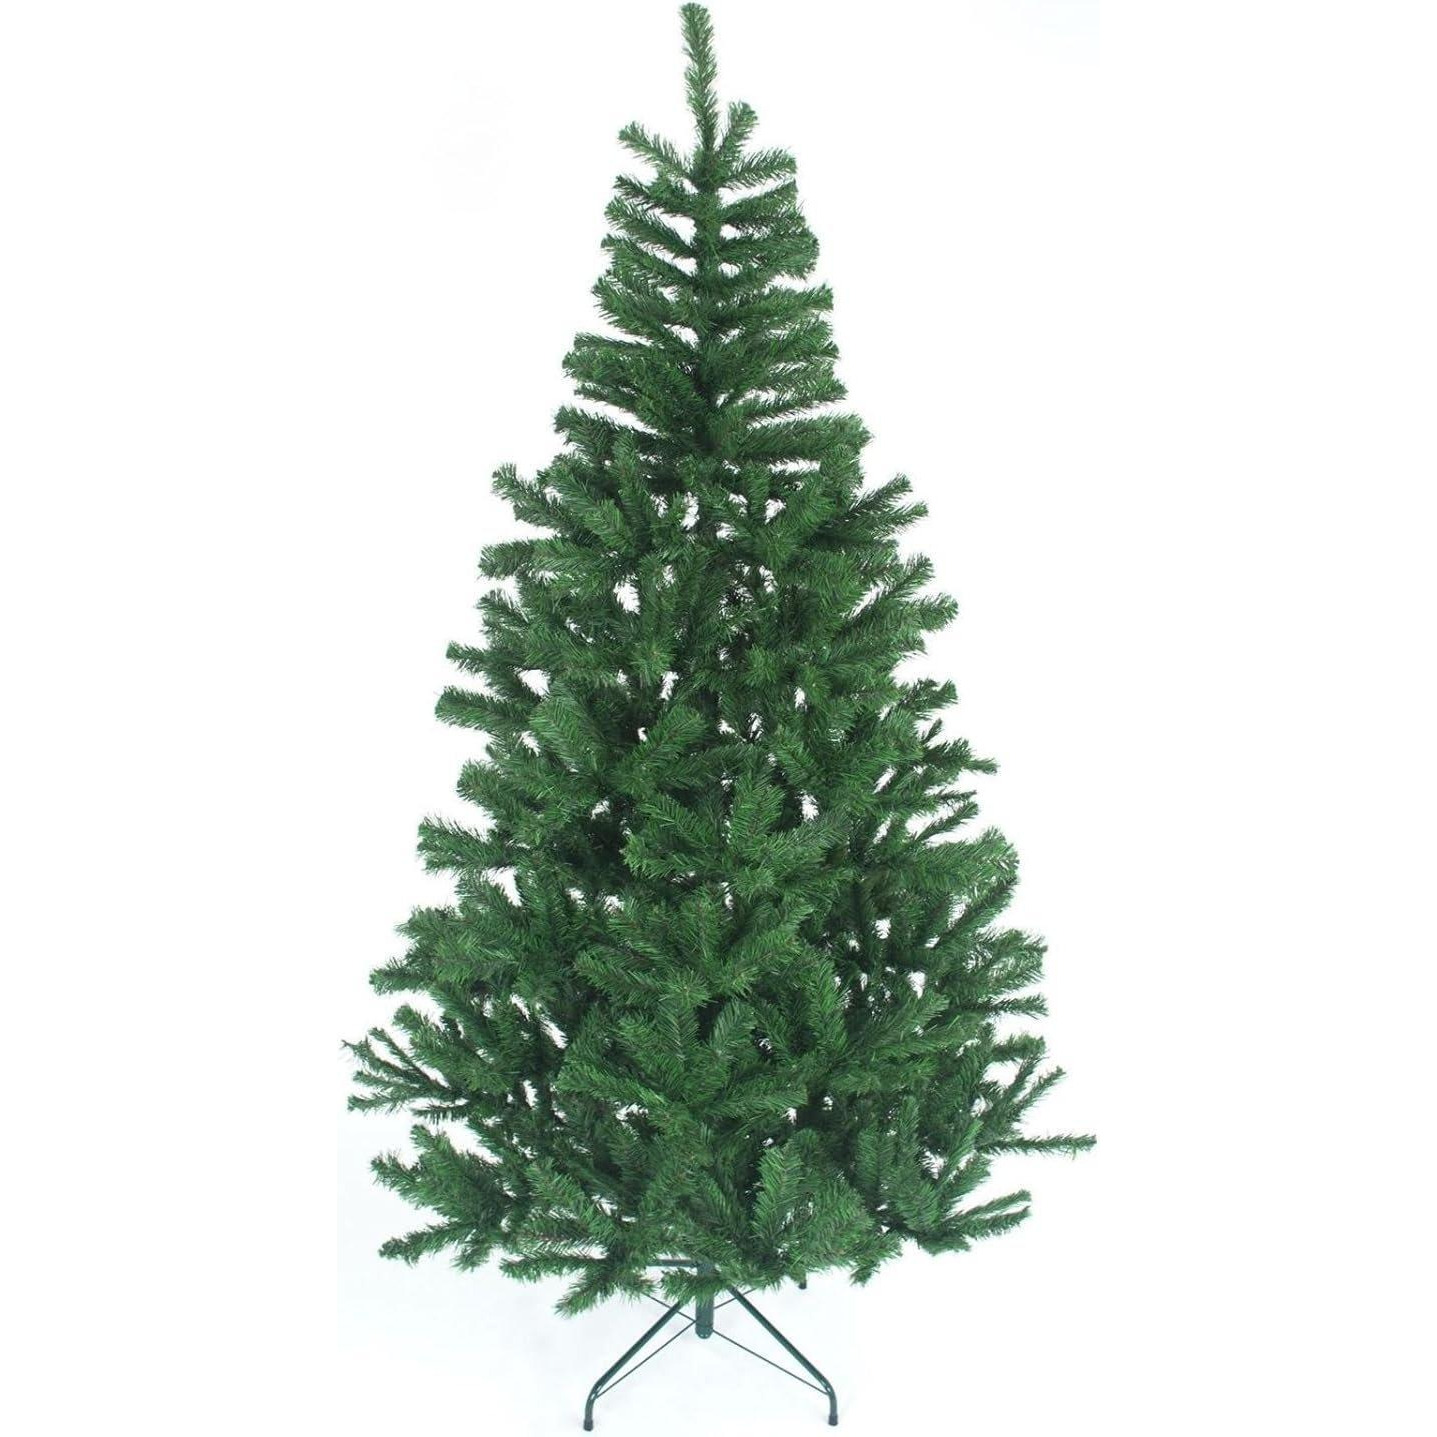 6FT Green Alaskan Pine Christmas Tree - image 1